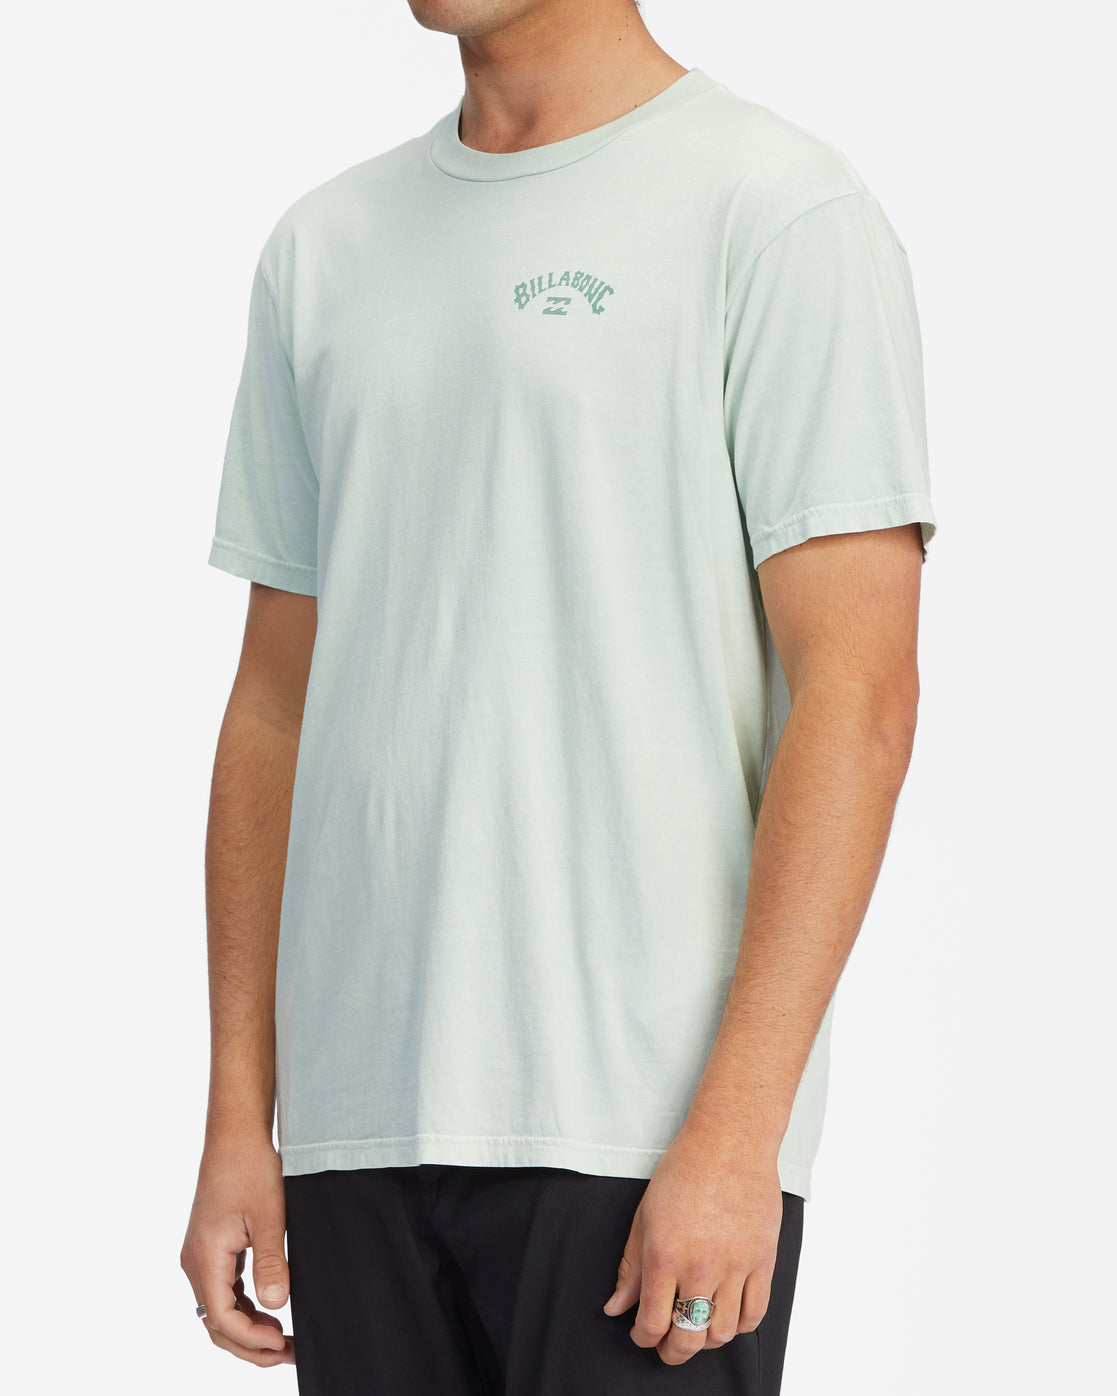 Billabong Arch Wave T-Shirt Seaglass